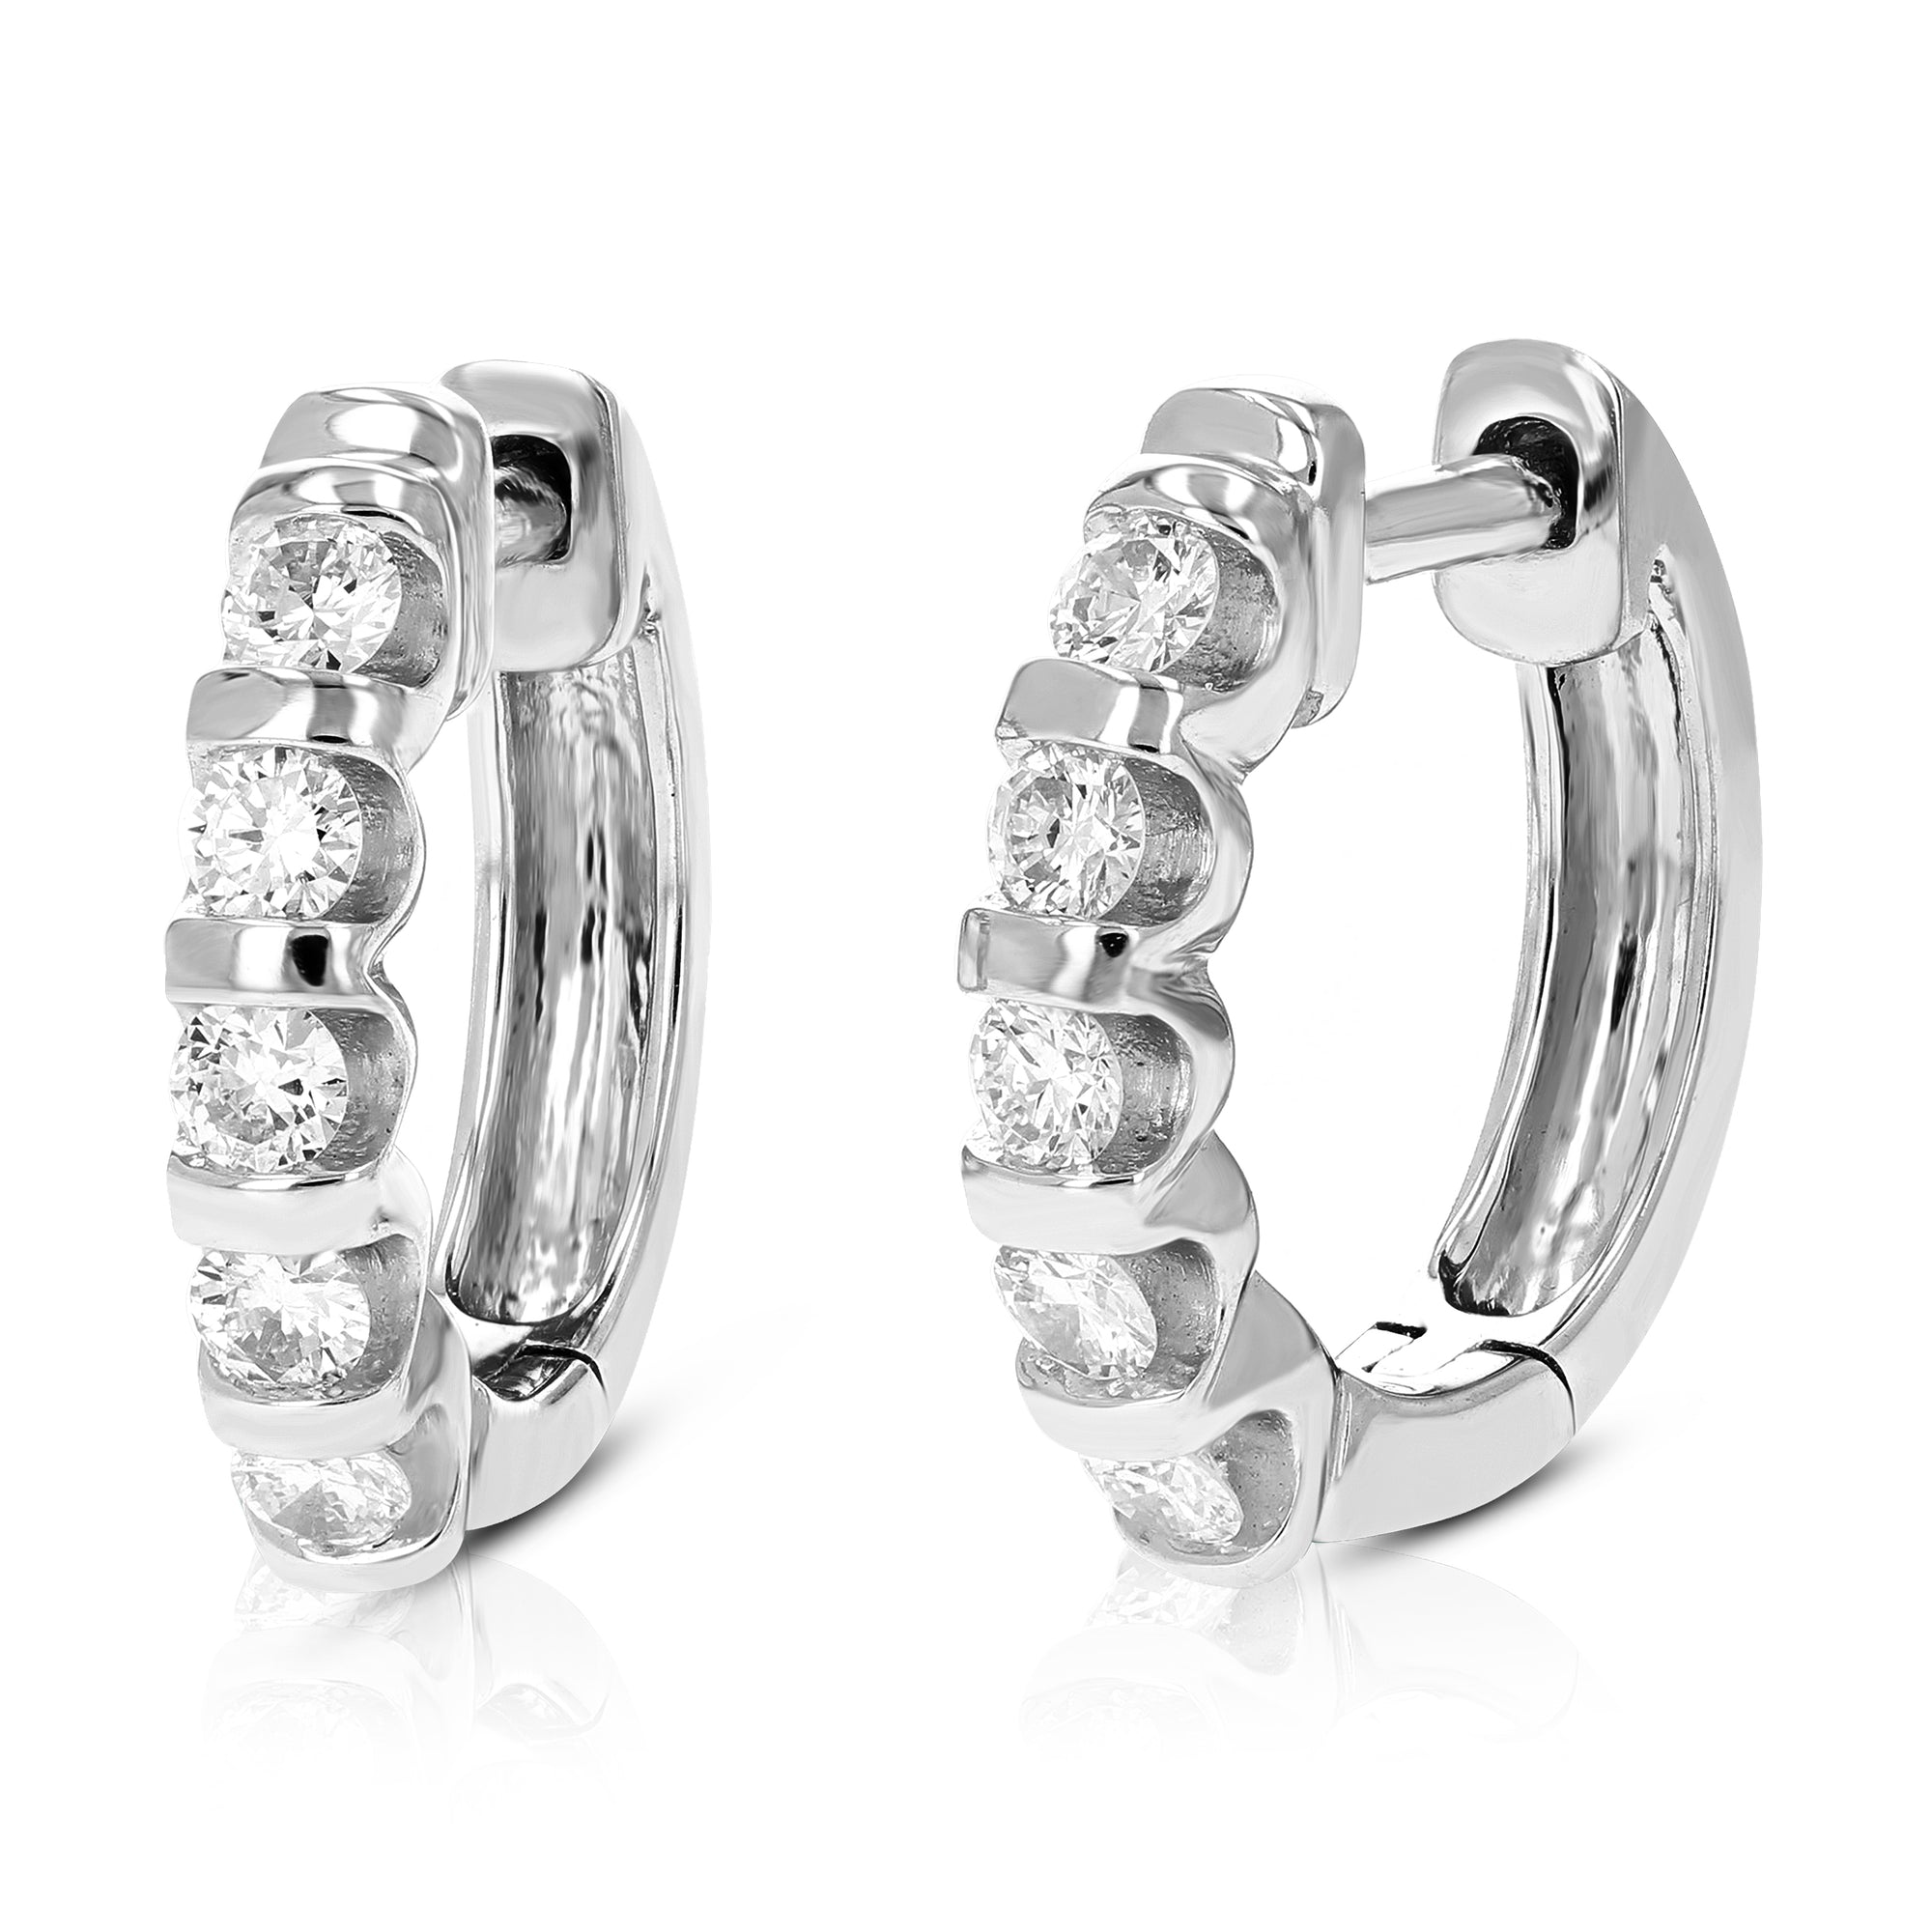 1/2 cttw Diamond Hoop Earrings for Women, Round Lab Grown Diamond Earrings in .925 Sterling Silver, Channel Setting, 2/3 Inch